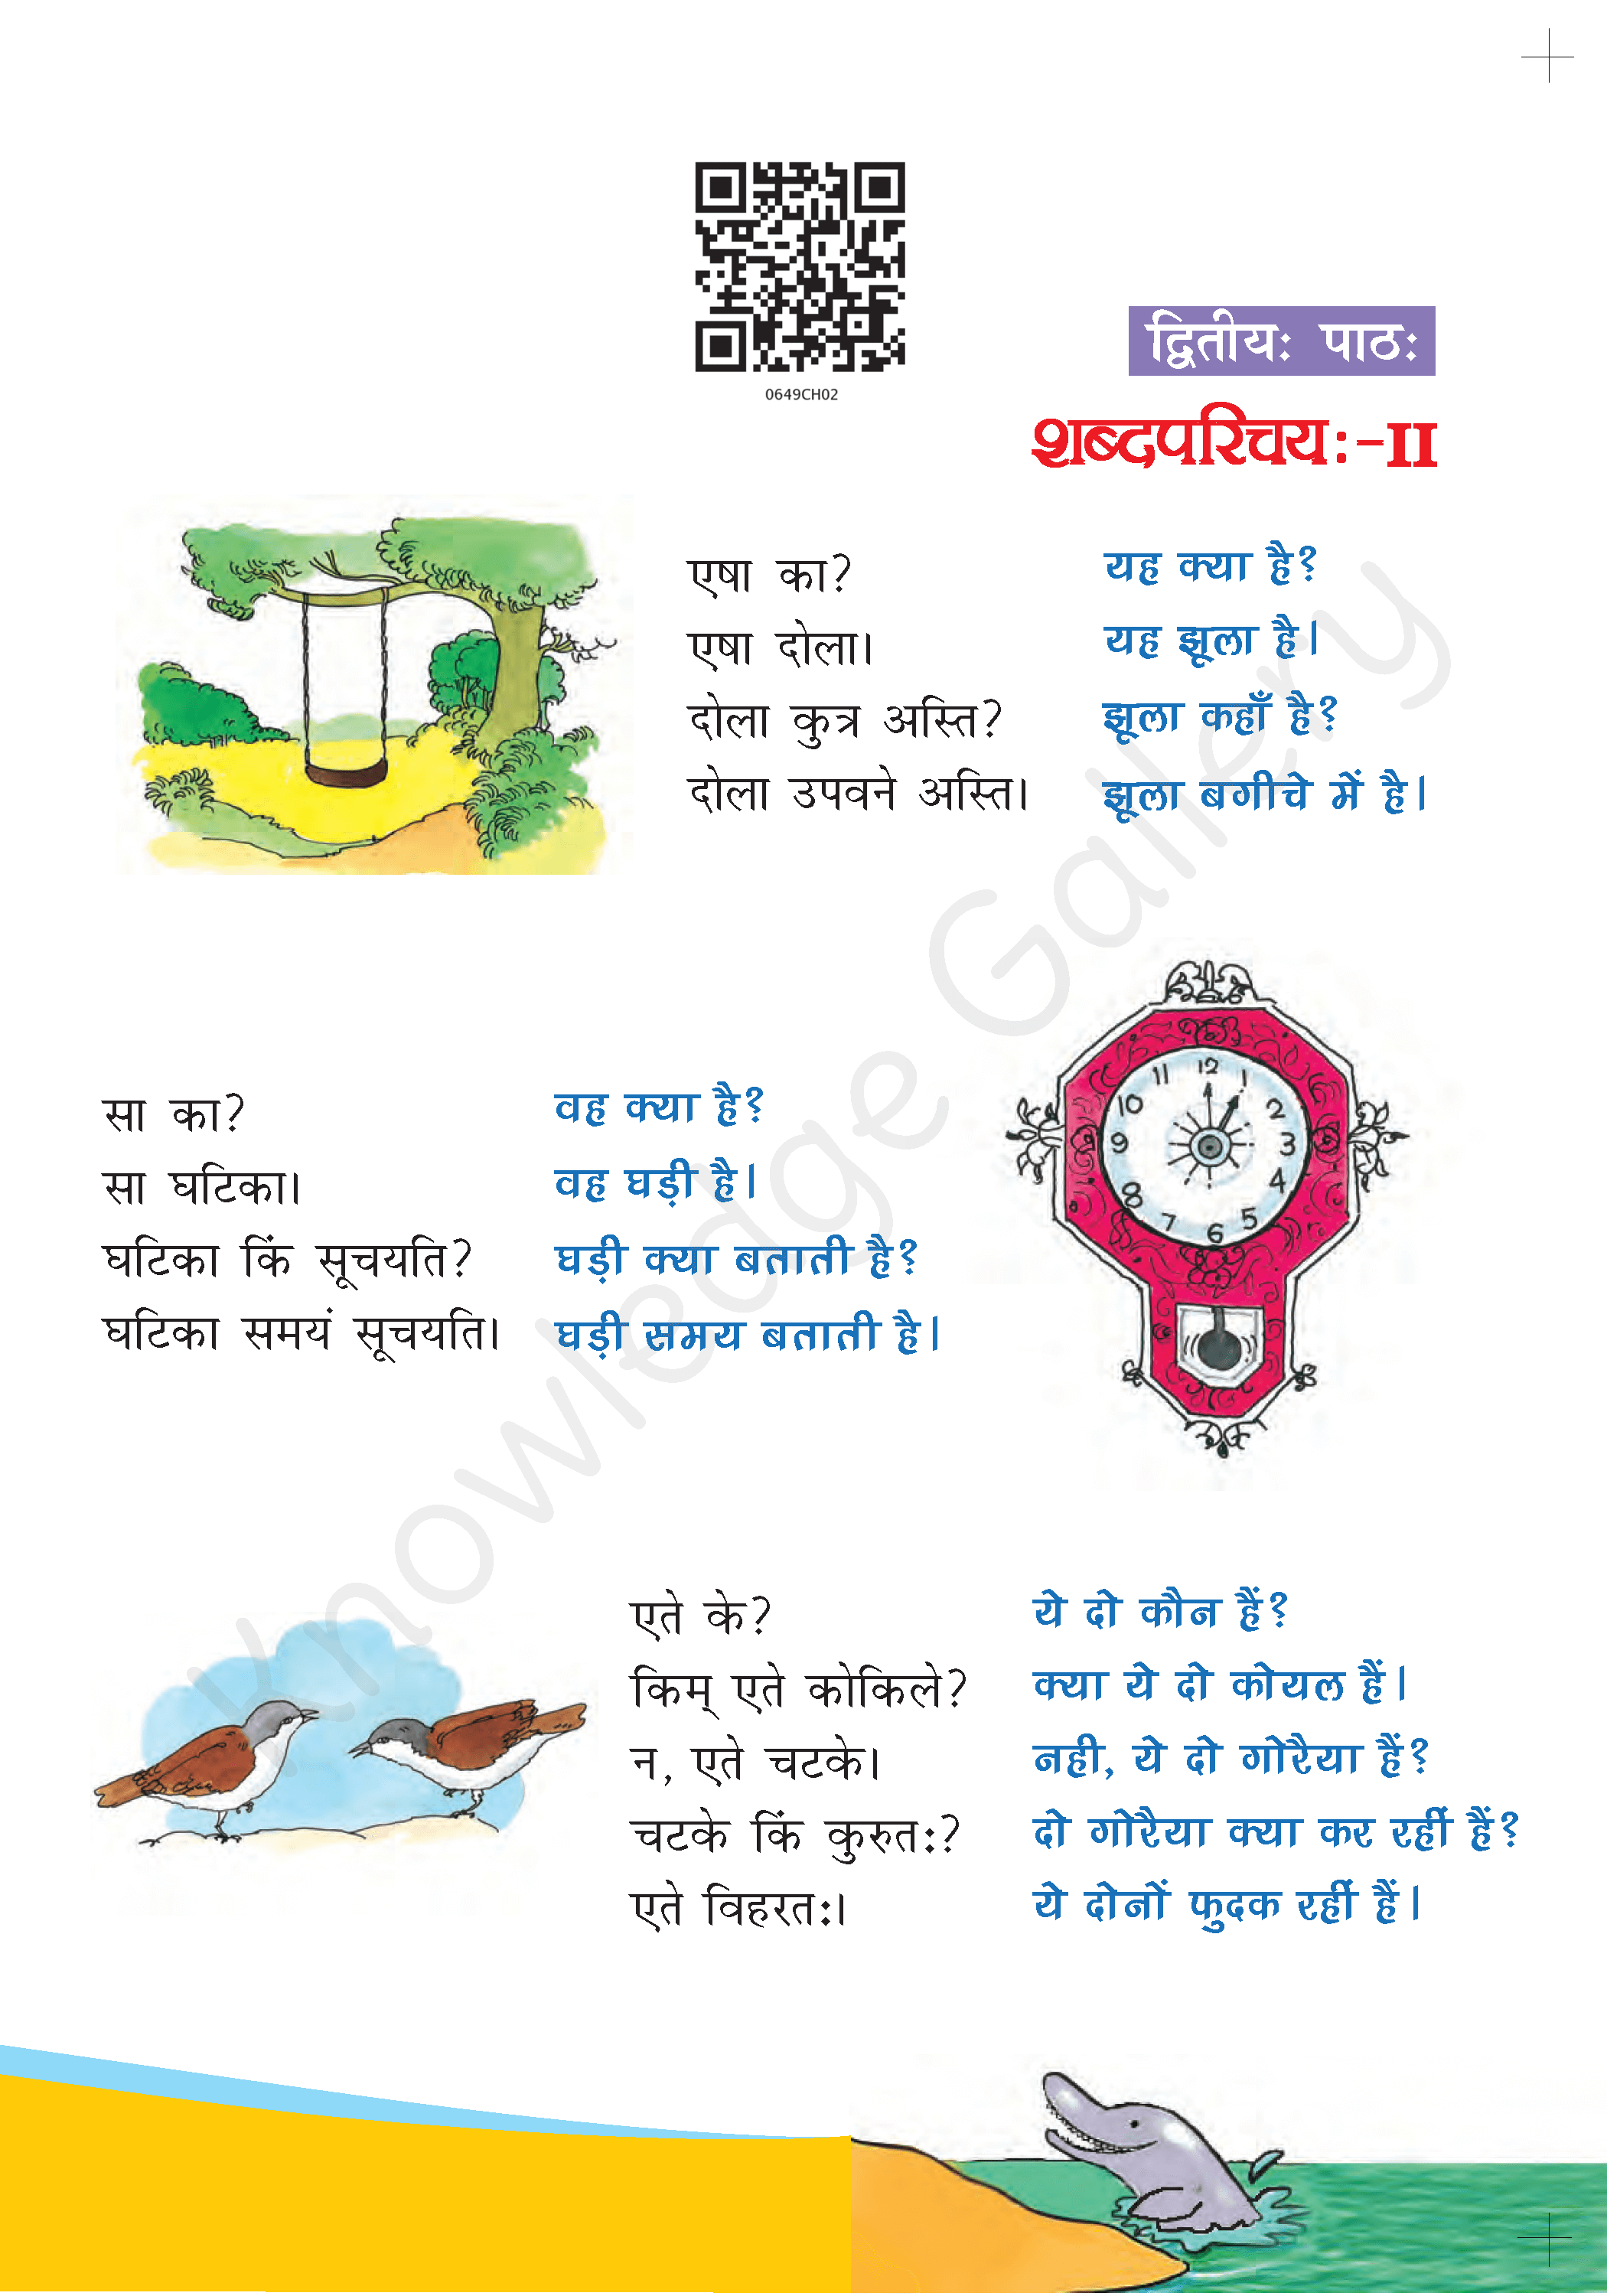 NCERT Solution For Class 6 Sanskrit Chapter 2 part 1